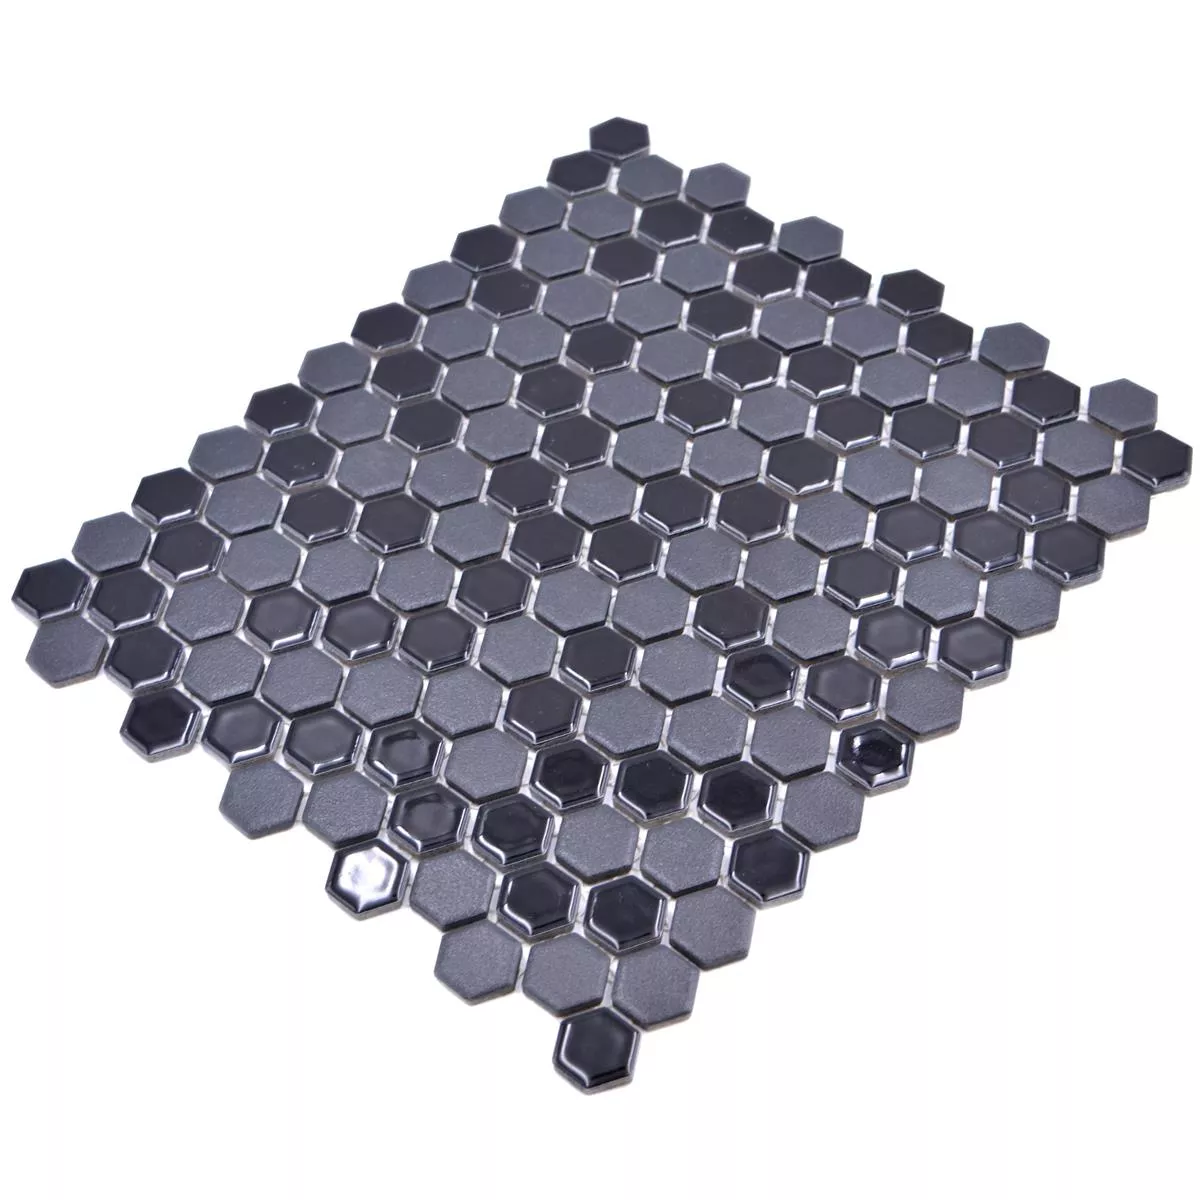 Ceramic Mosaic Tripolis Black R10B Hexagon 23